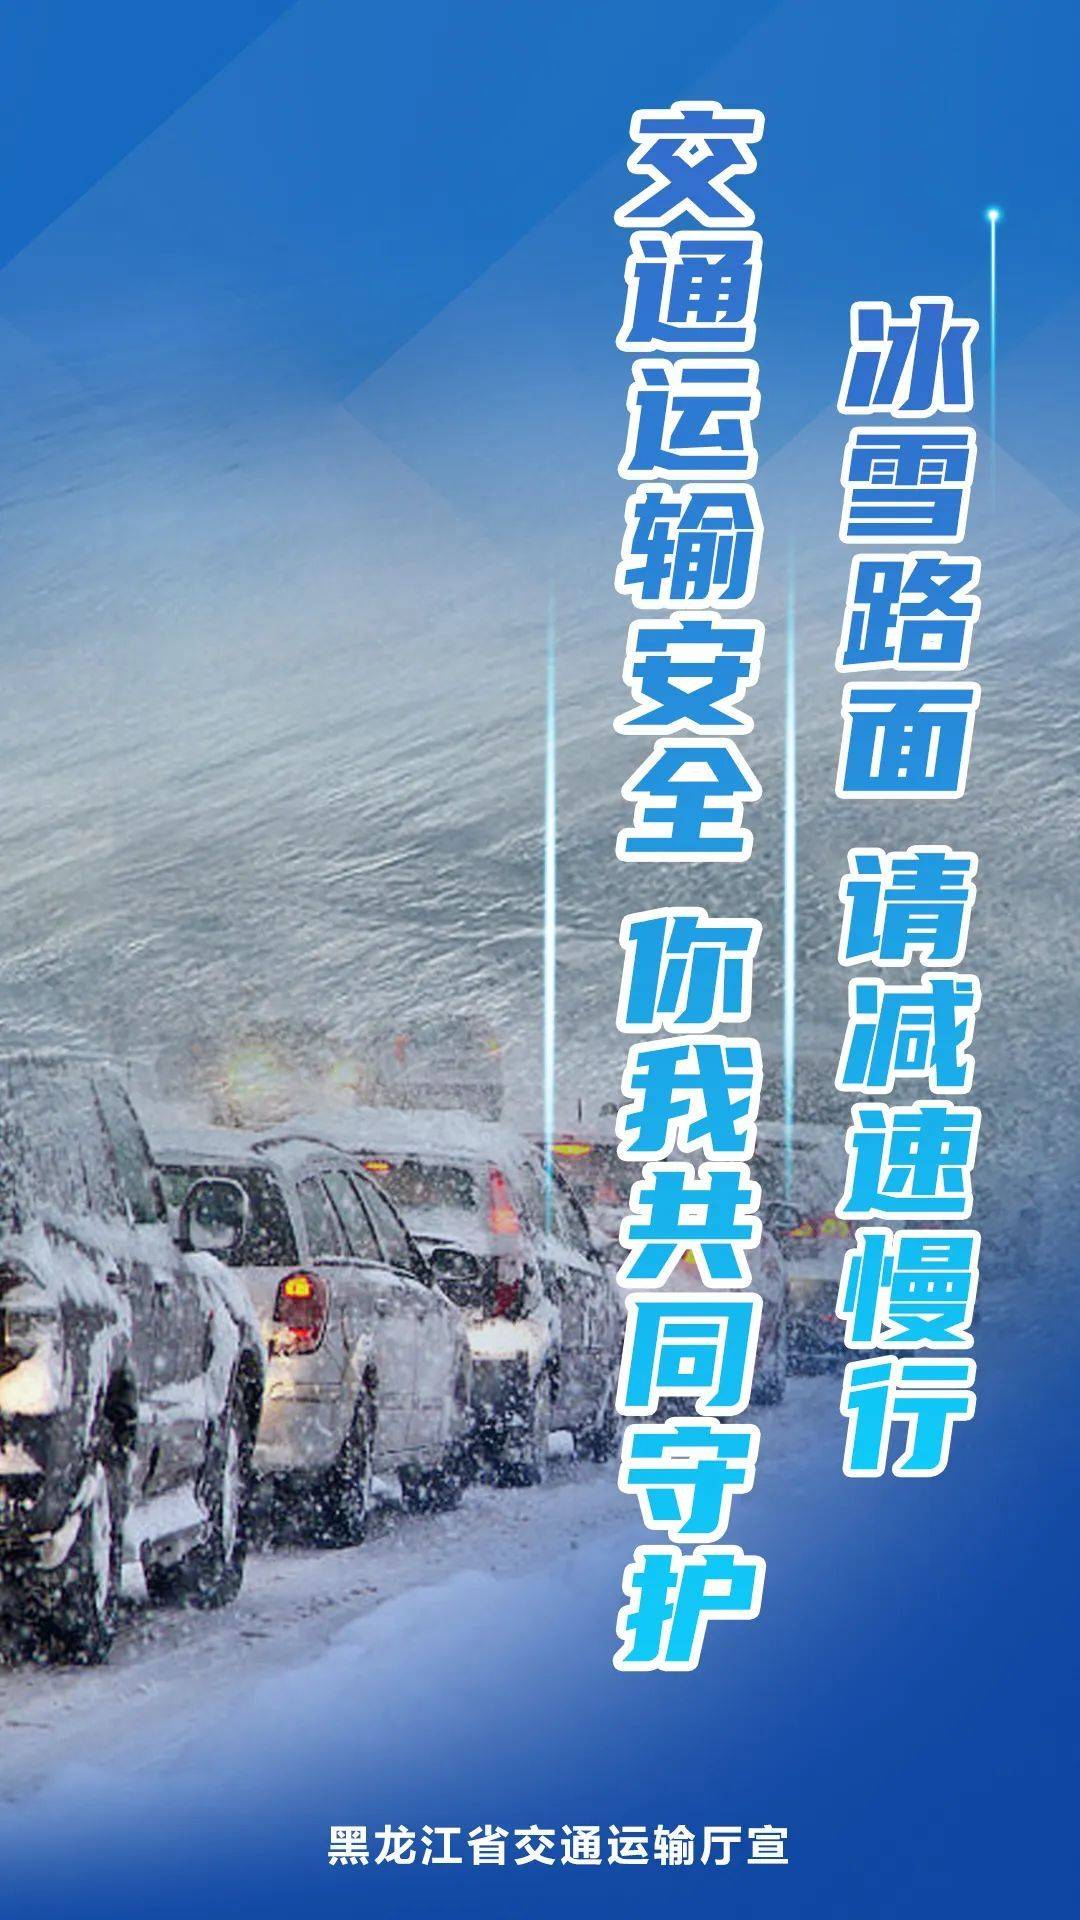 受天气原因影响部分高速限速 黑龙江今日路网通行状态